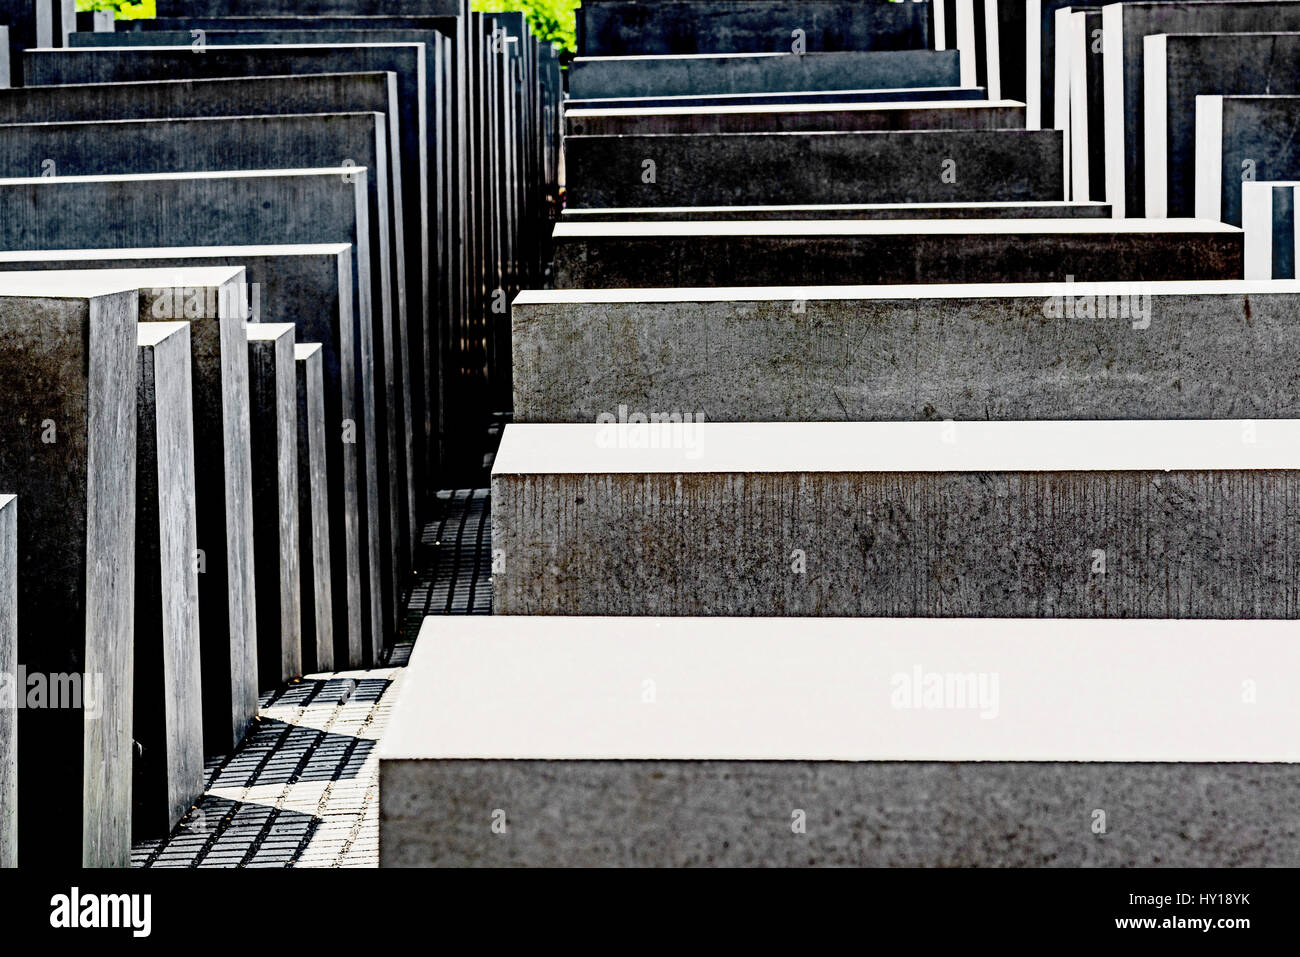 Berlino, Holocast Memorial; Berlino, Gedenkstaette für die ermordeten Juden Foto Stock